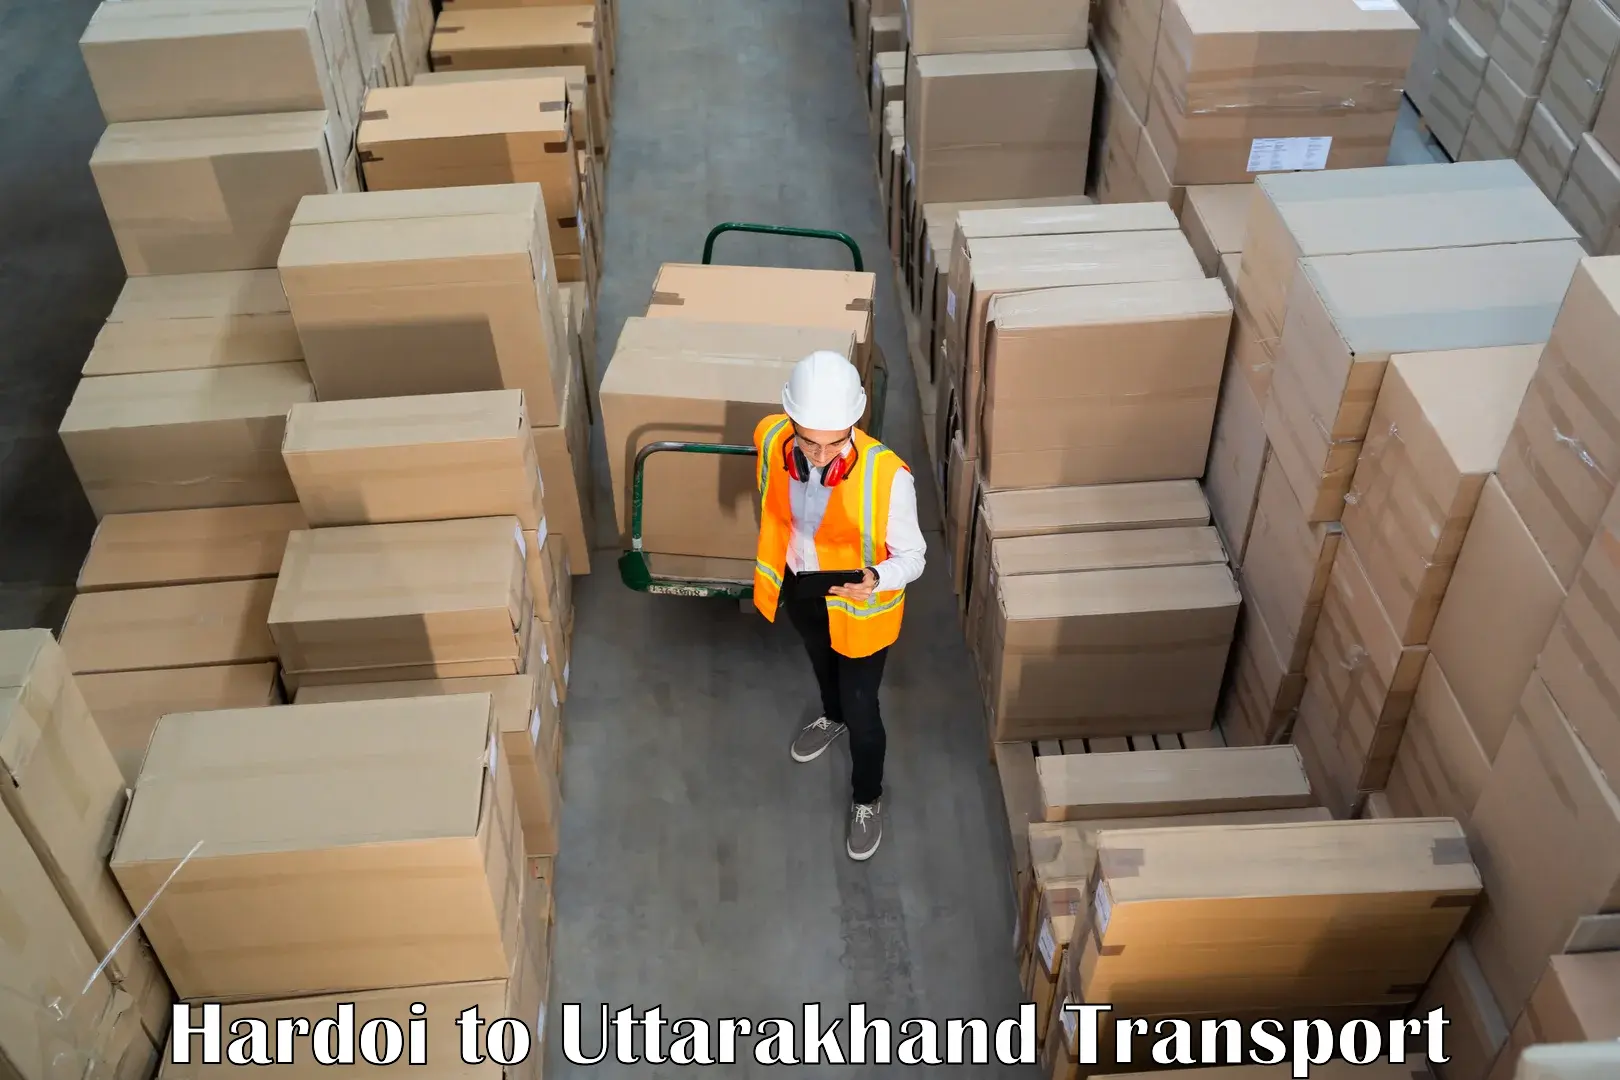 Transport shared services Hardoi to Nainital